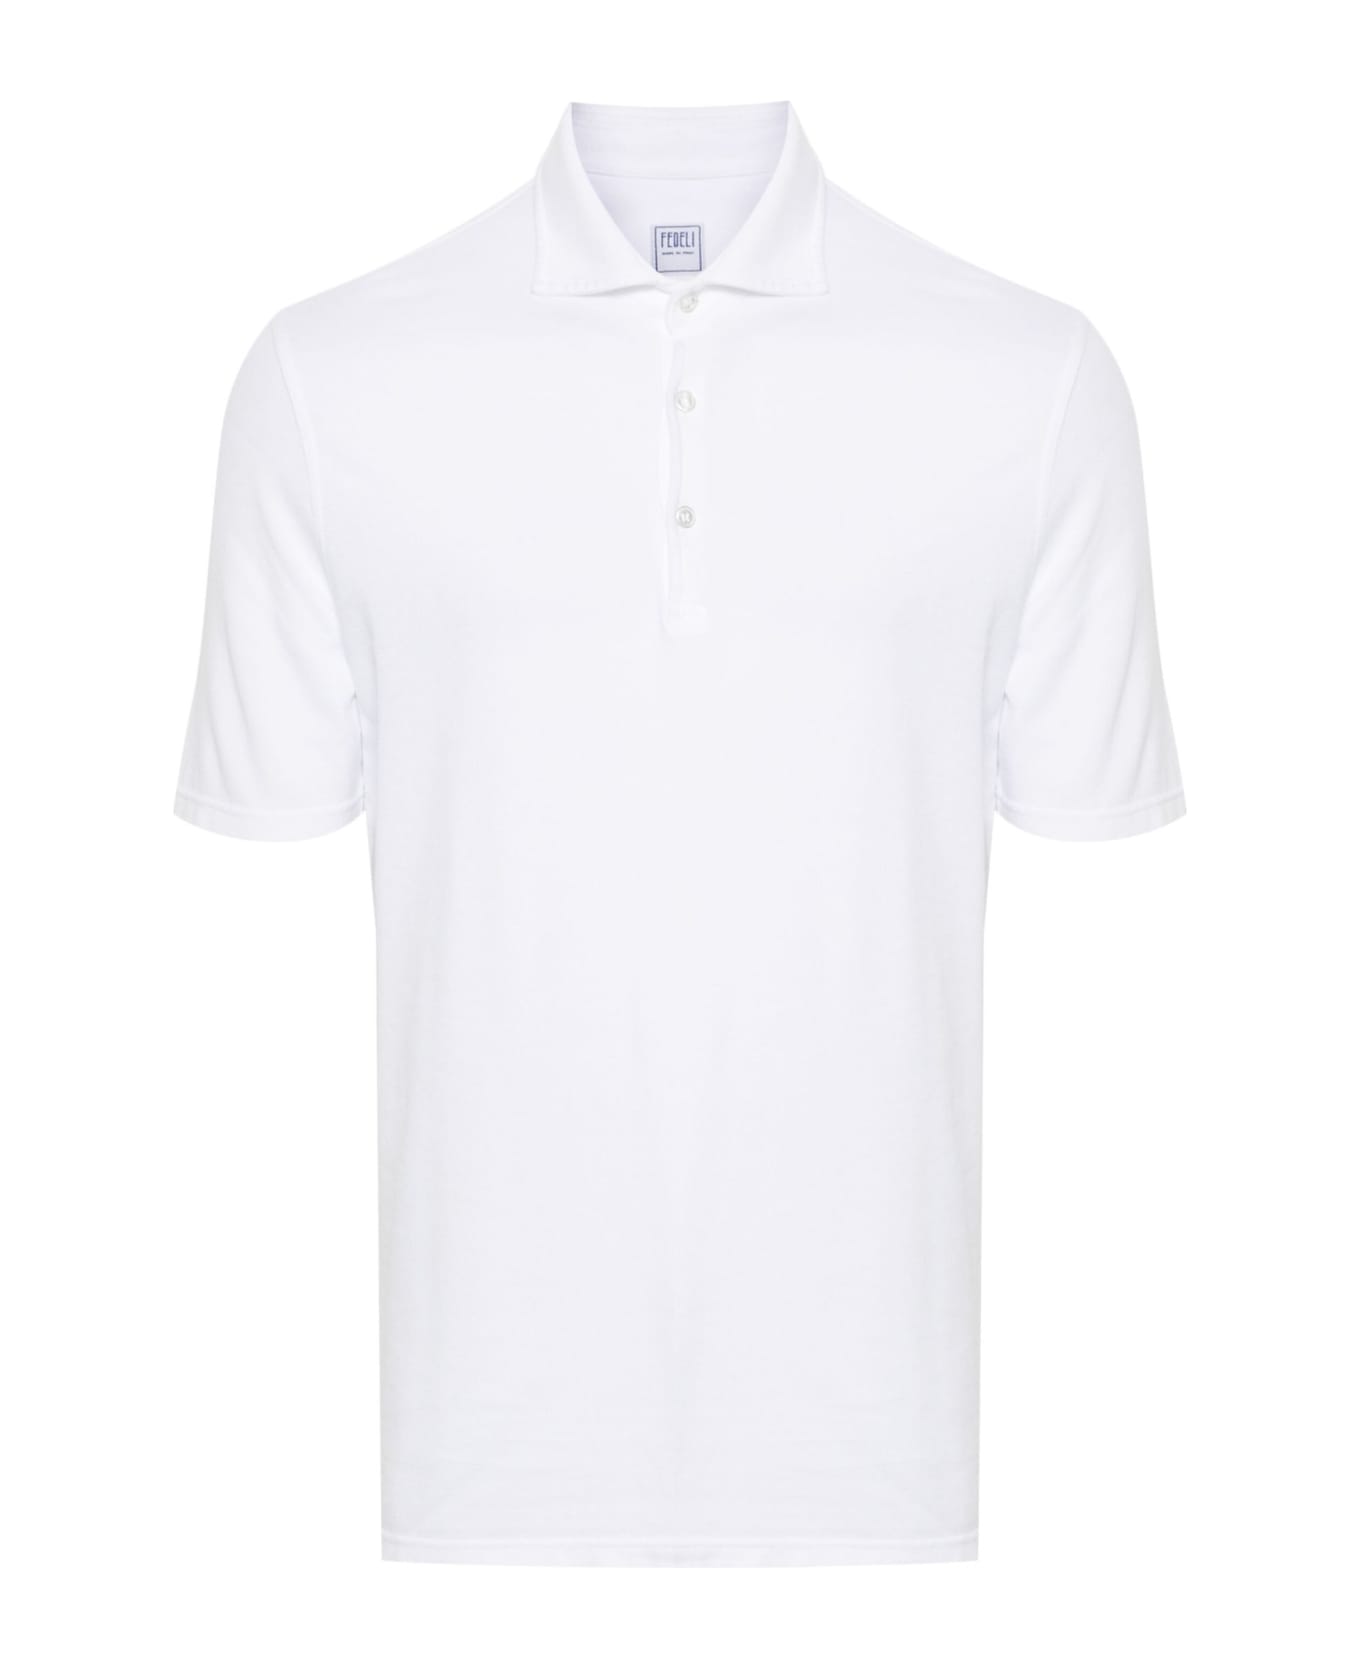 Fedeli White Cotton Polo Shirt - White